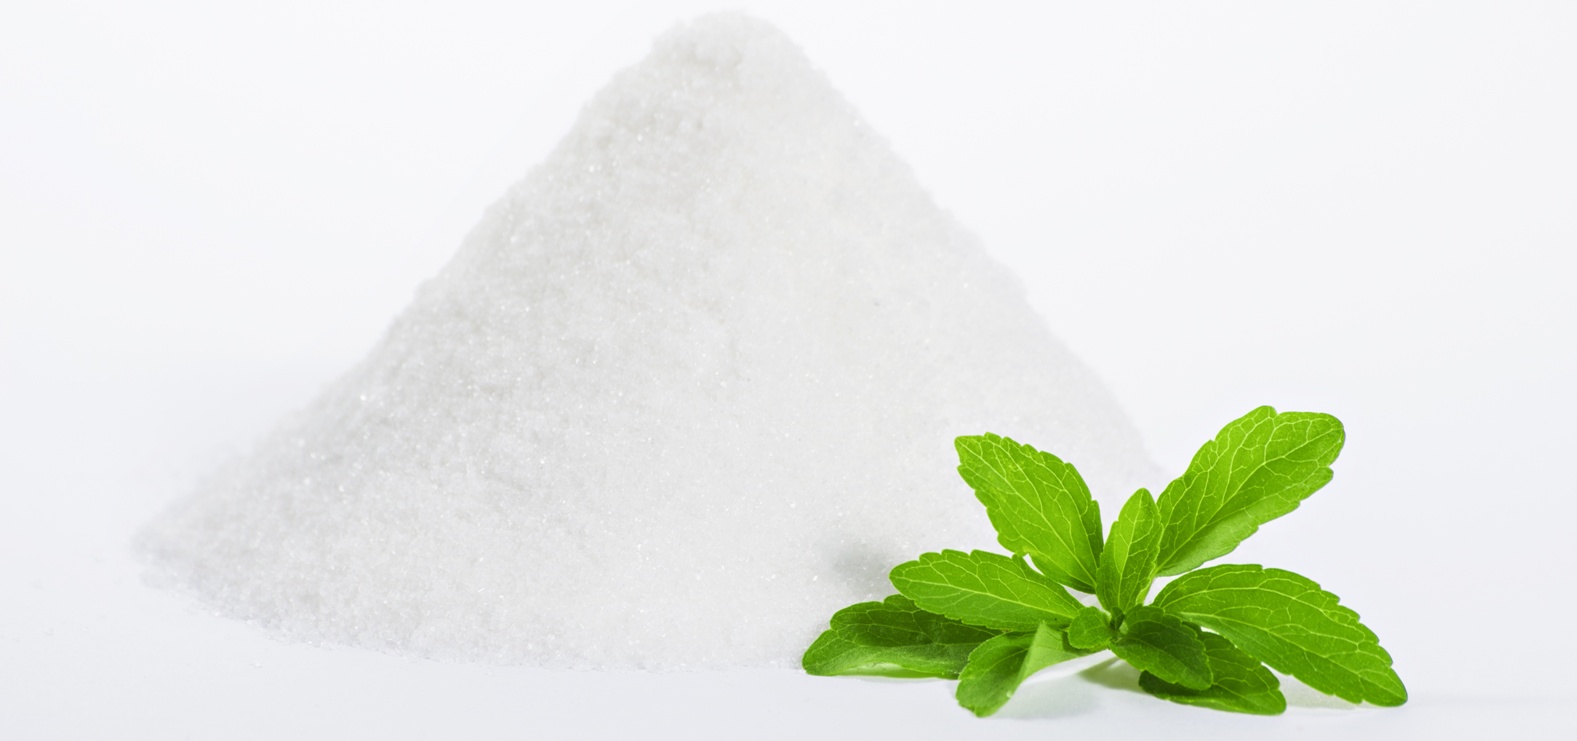 تعرف على عشبة الـ “ستيفيا” بديل طبيعي للسكر منافعه وأضراره stevia sugar